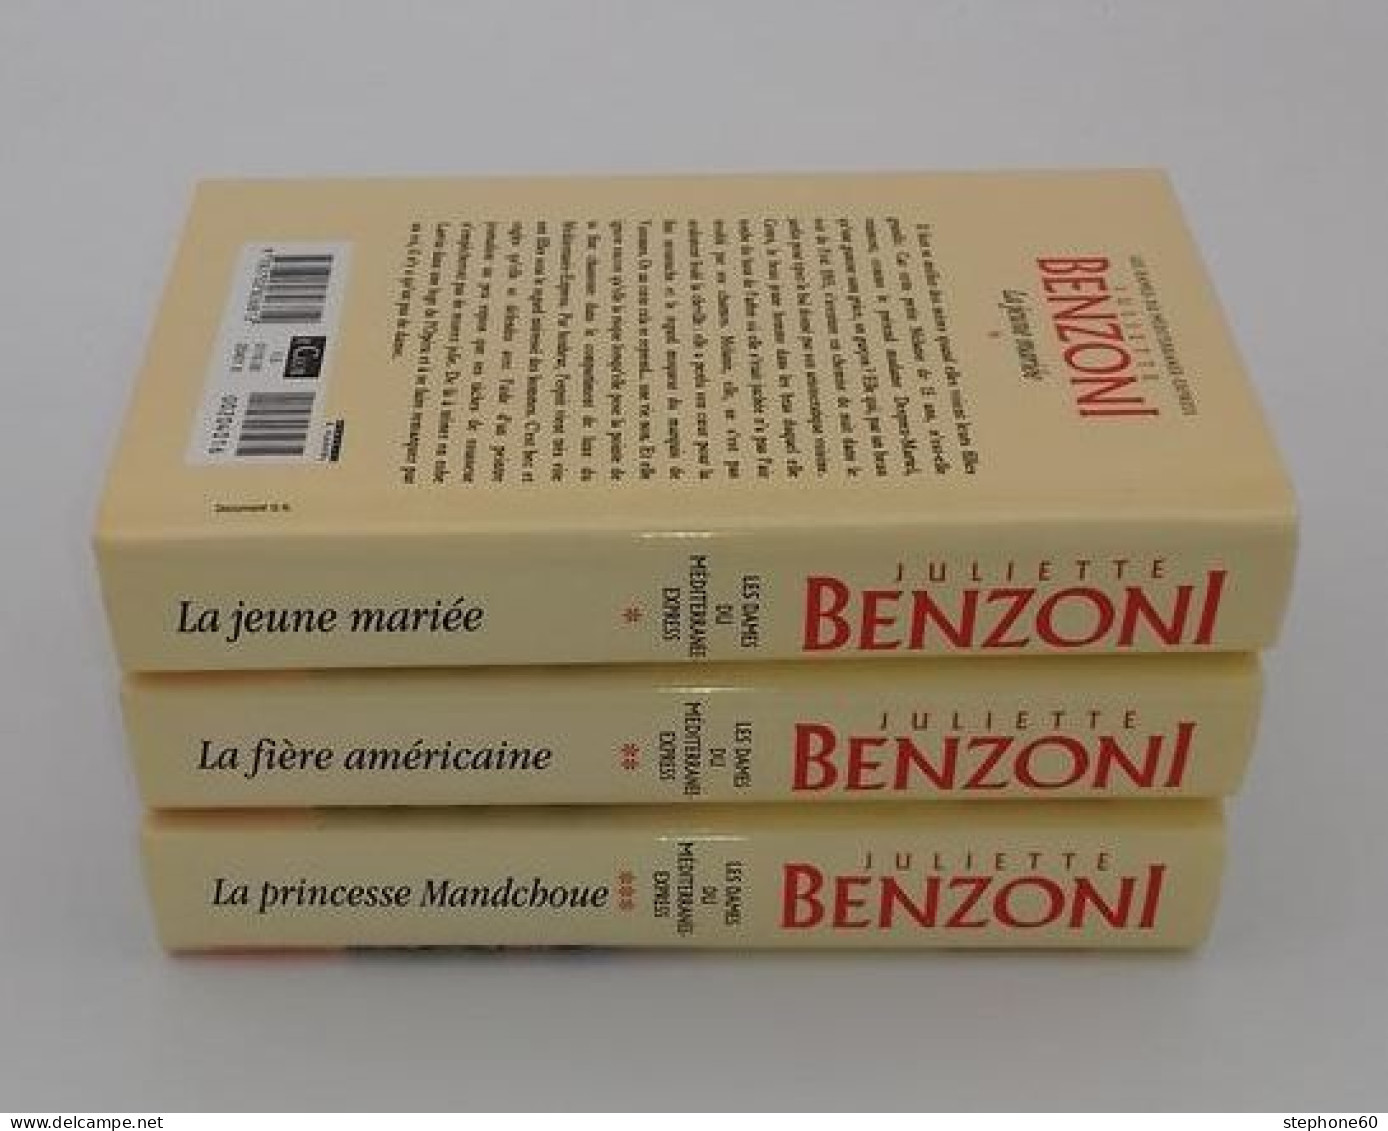 999 - (125) Les Dames Du Mediteranee Express - Juliette Benzoni - Lot De 3 Livres - Lots De Plusieurs Livres